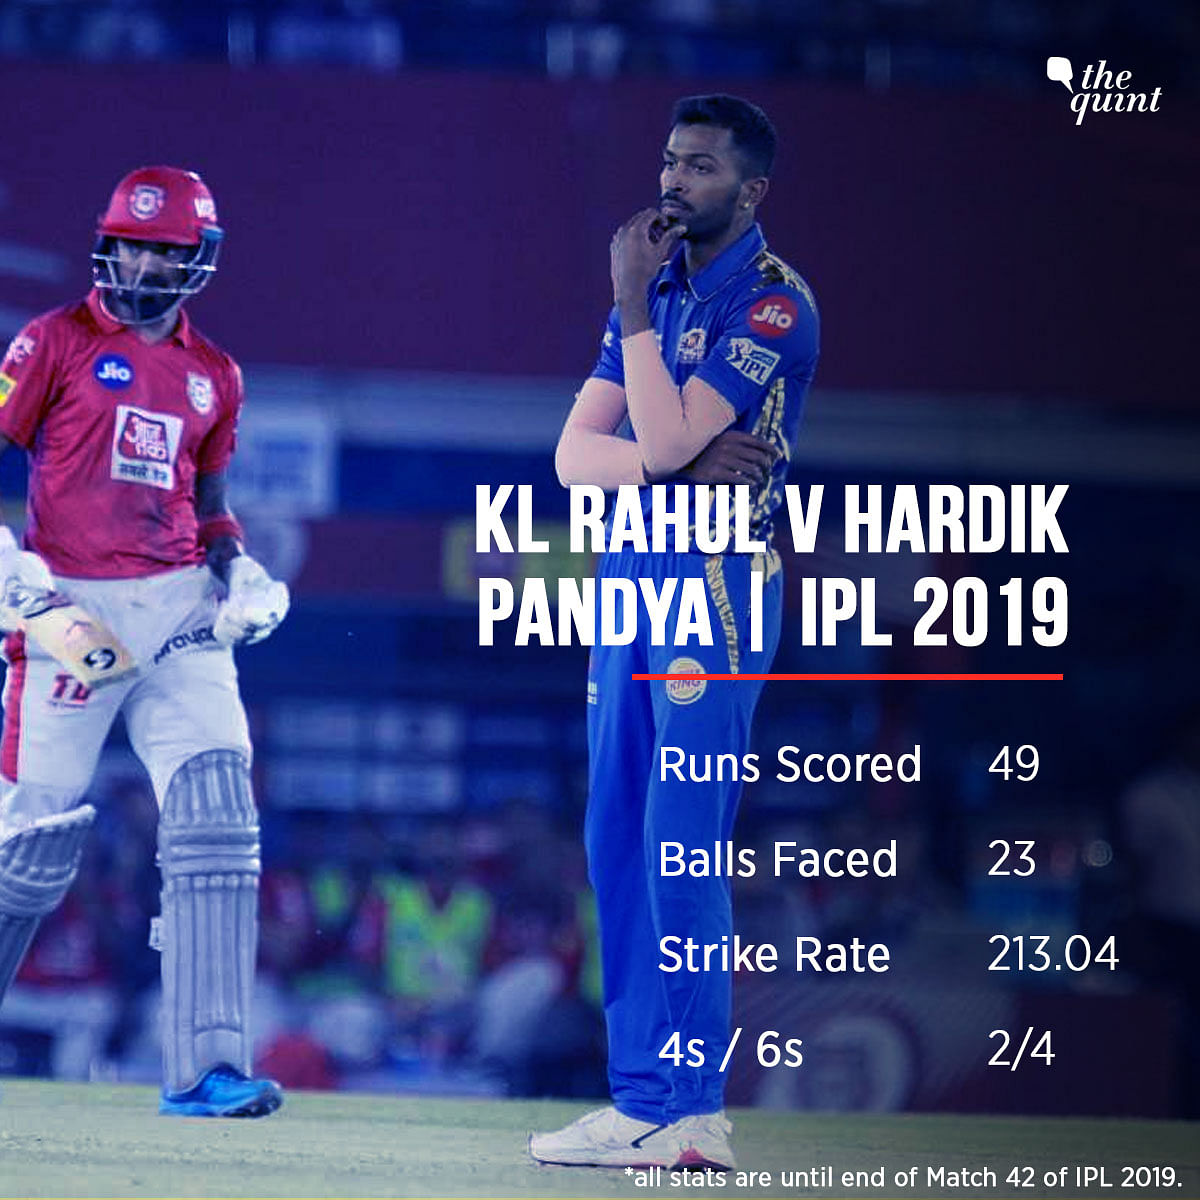 hardik pandya jersey number in ipl 2019